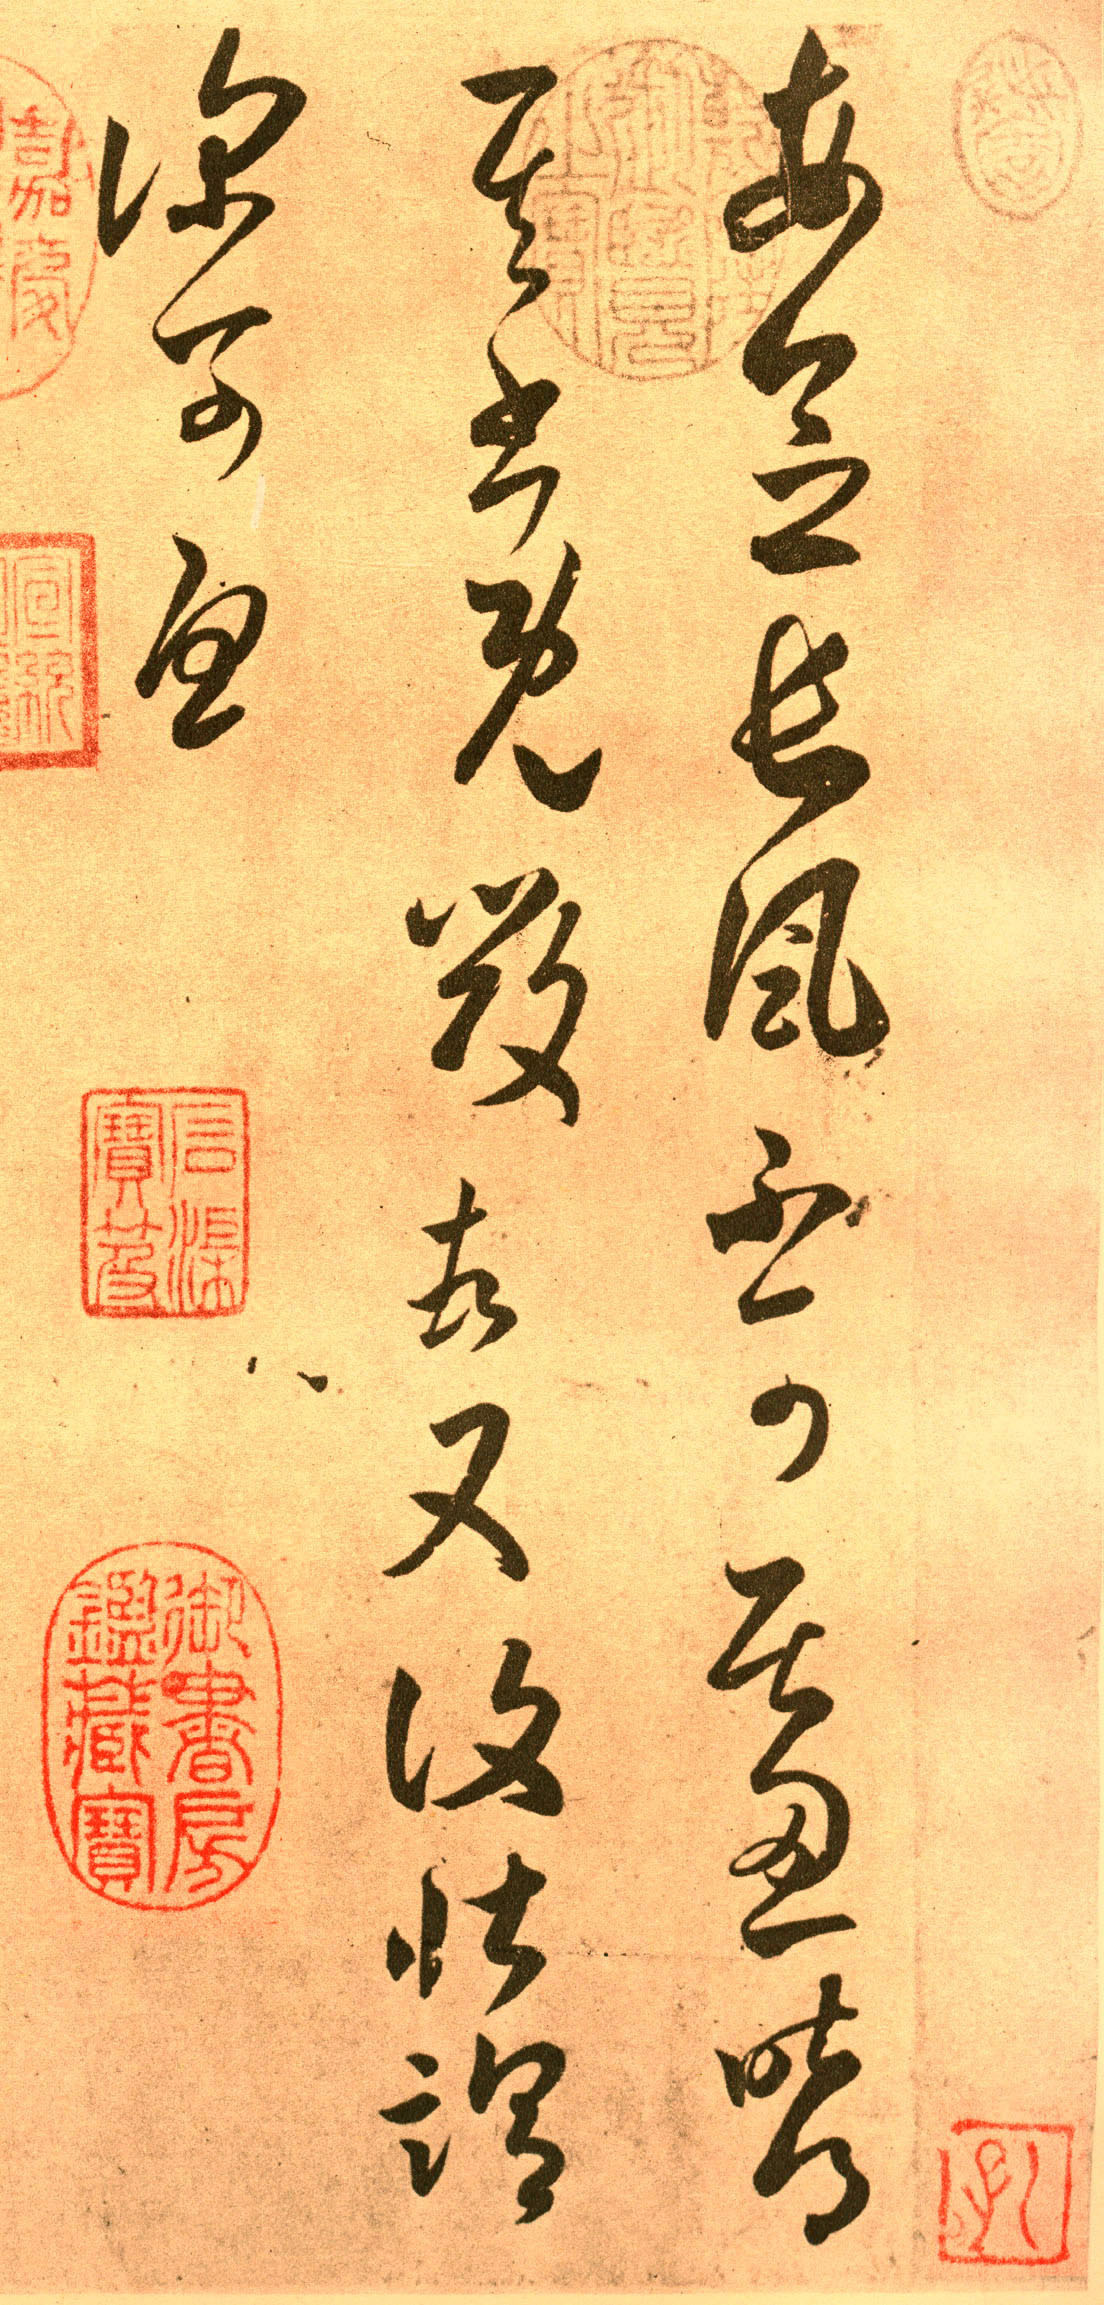 褚遂良临摹王羲之草书《长风帖》-台北故宫博物院藏(图2)